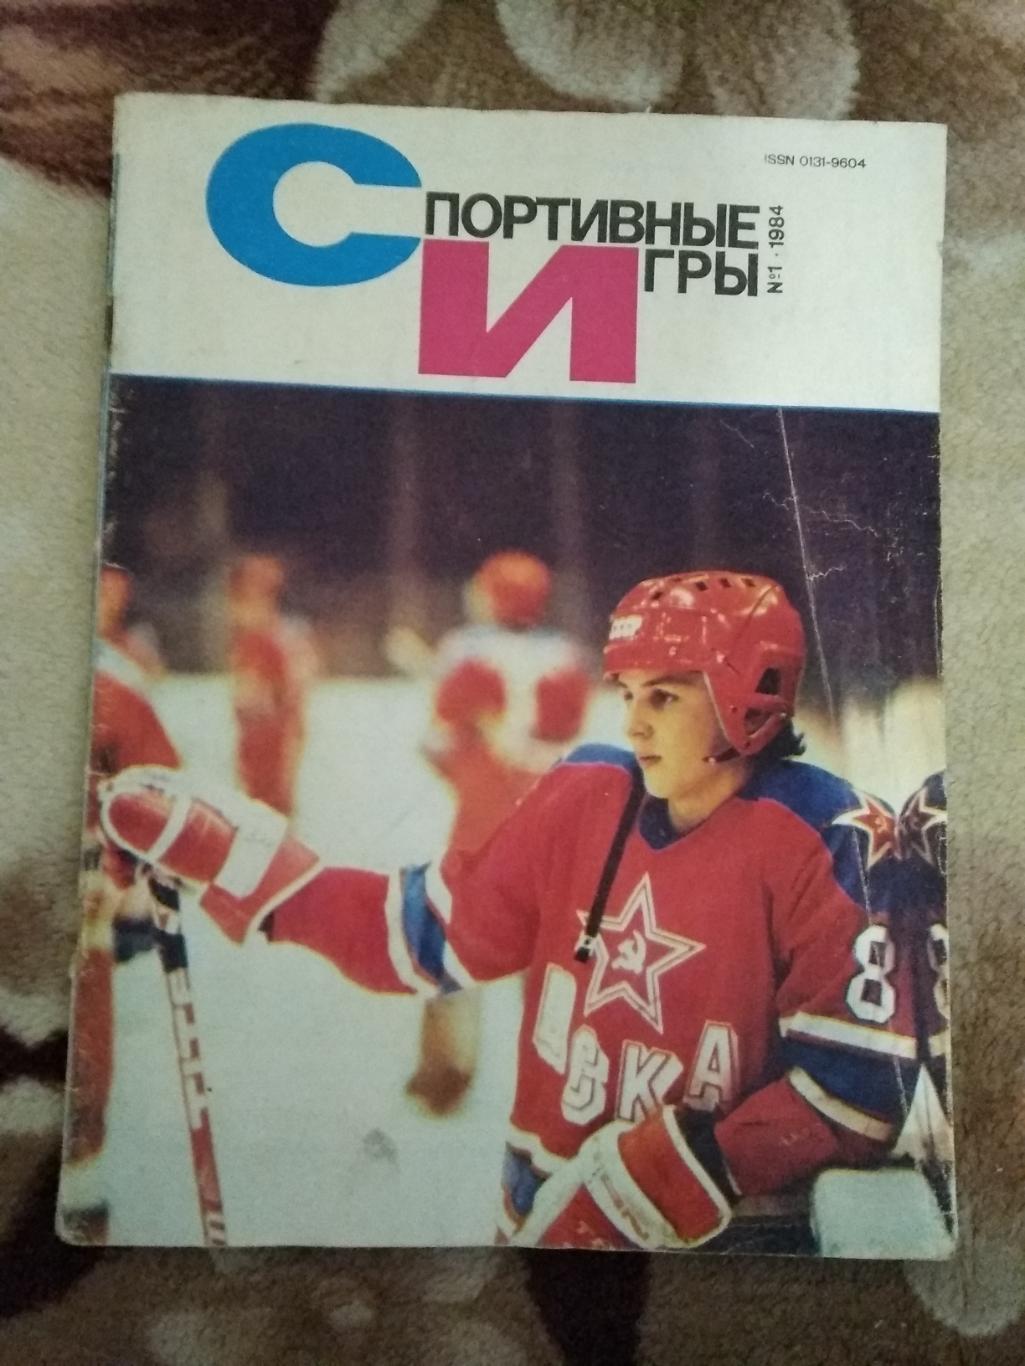 Журнал.Спортивные игры № 1 1984 г.